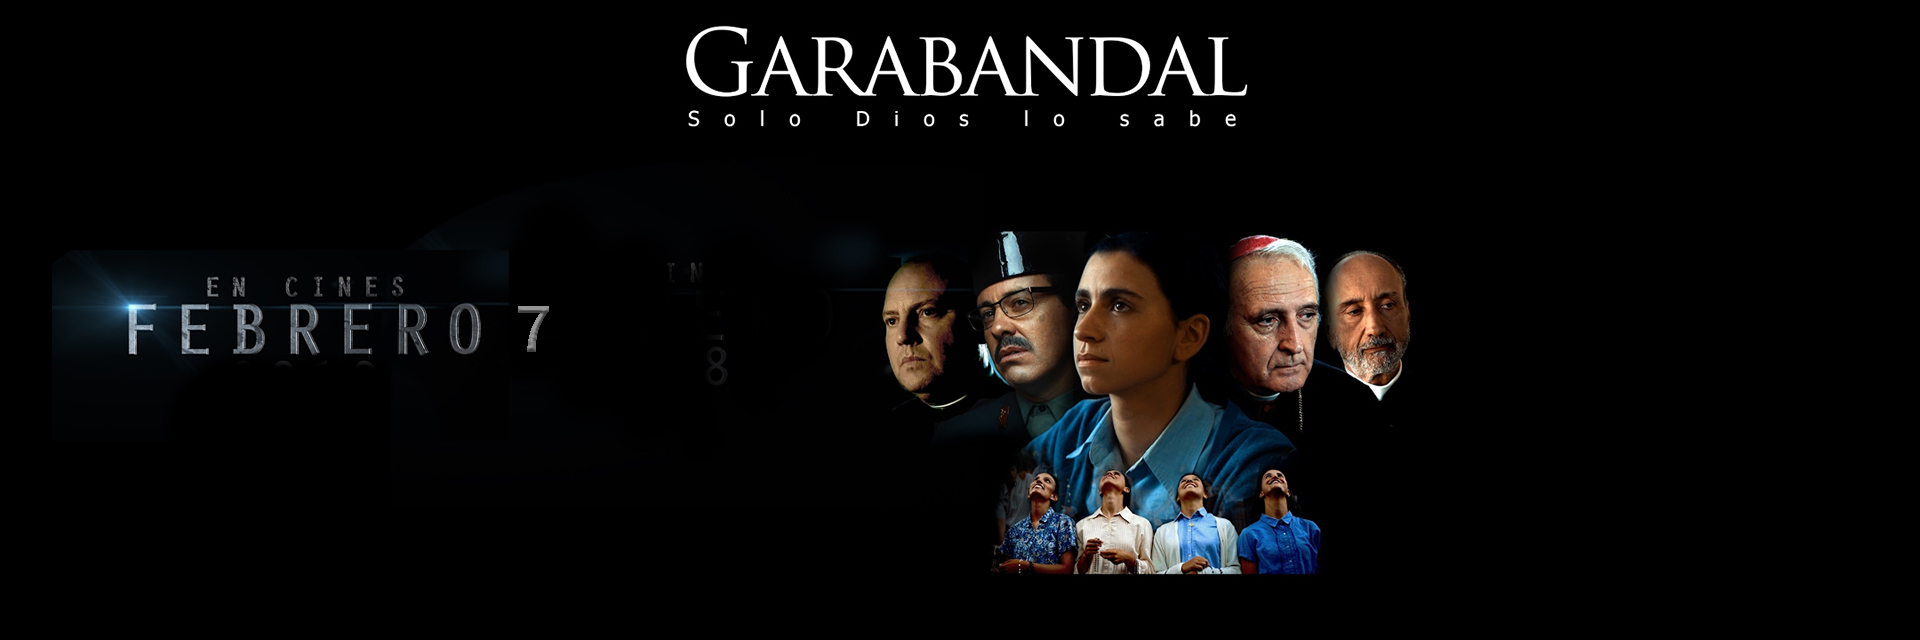 Garabandal, solo Dios lo sabe se estrena el próximo 7 de febrero